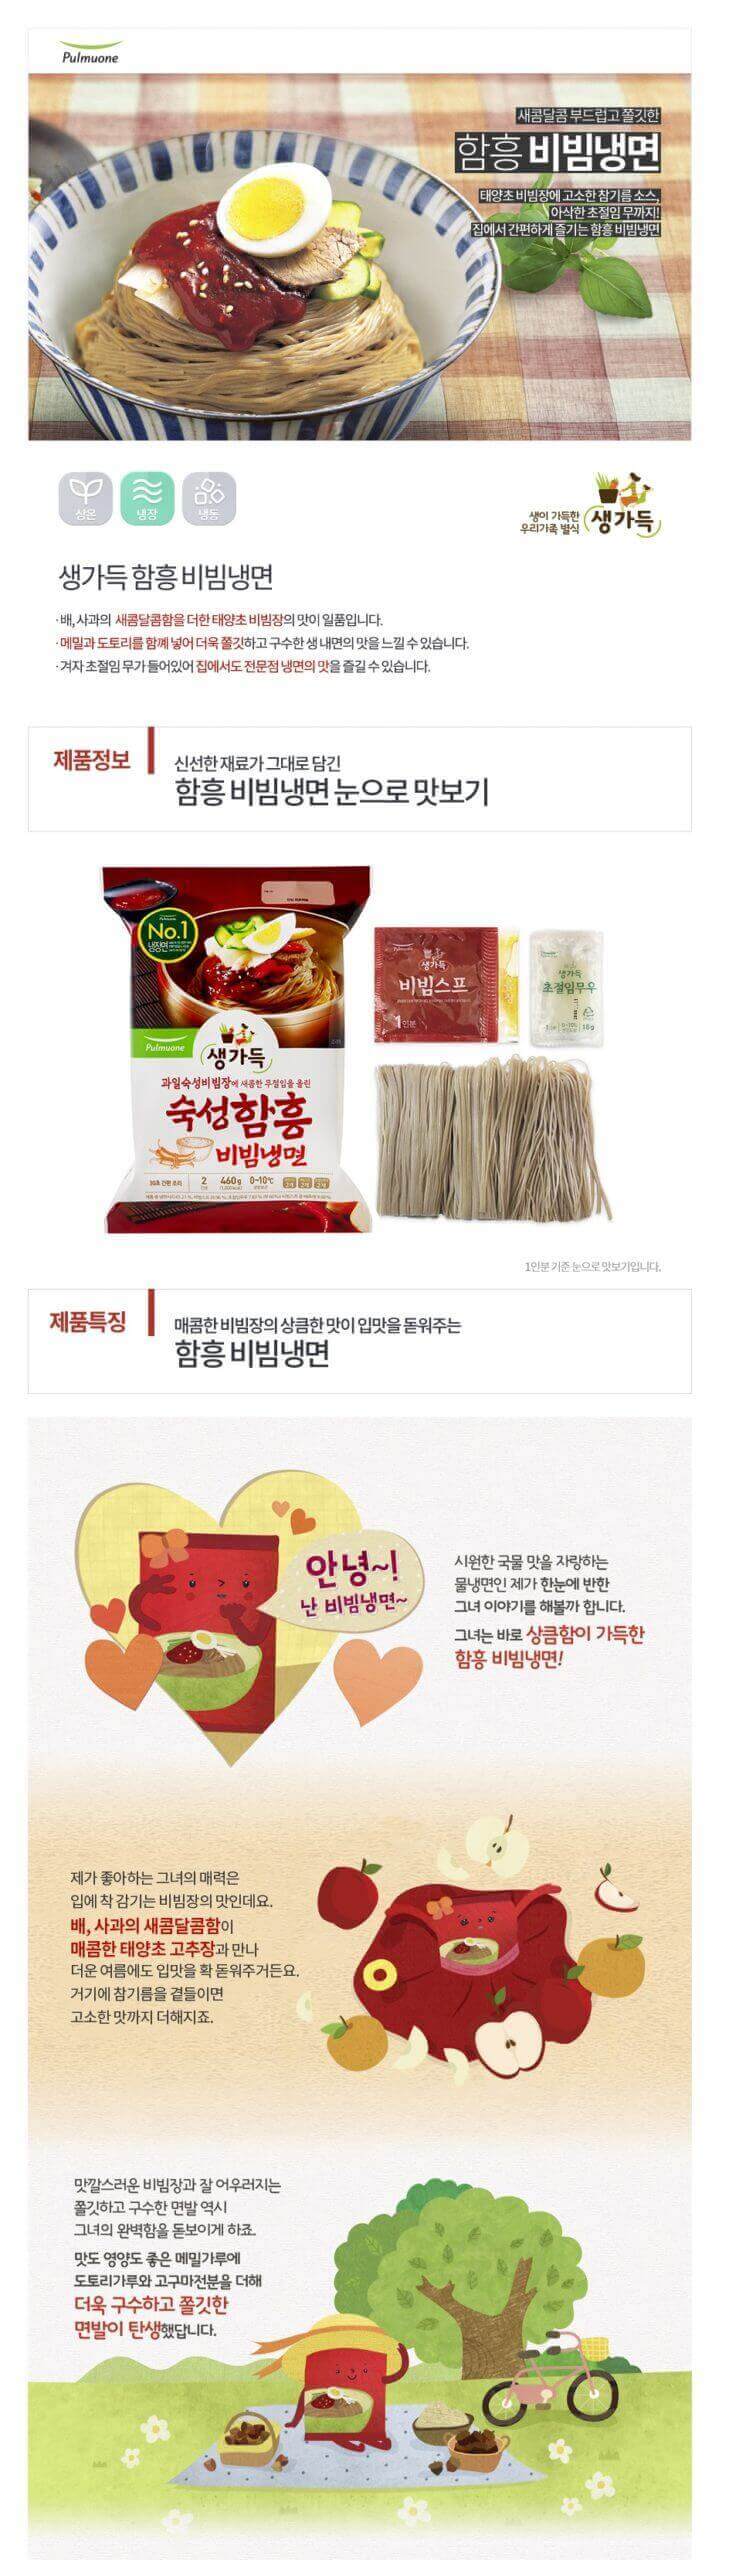 韓國食品-[Pulmuone] Hamheung Spicy Cold Noodle 460g